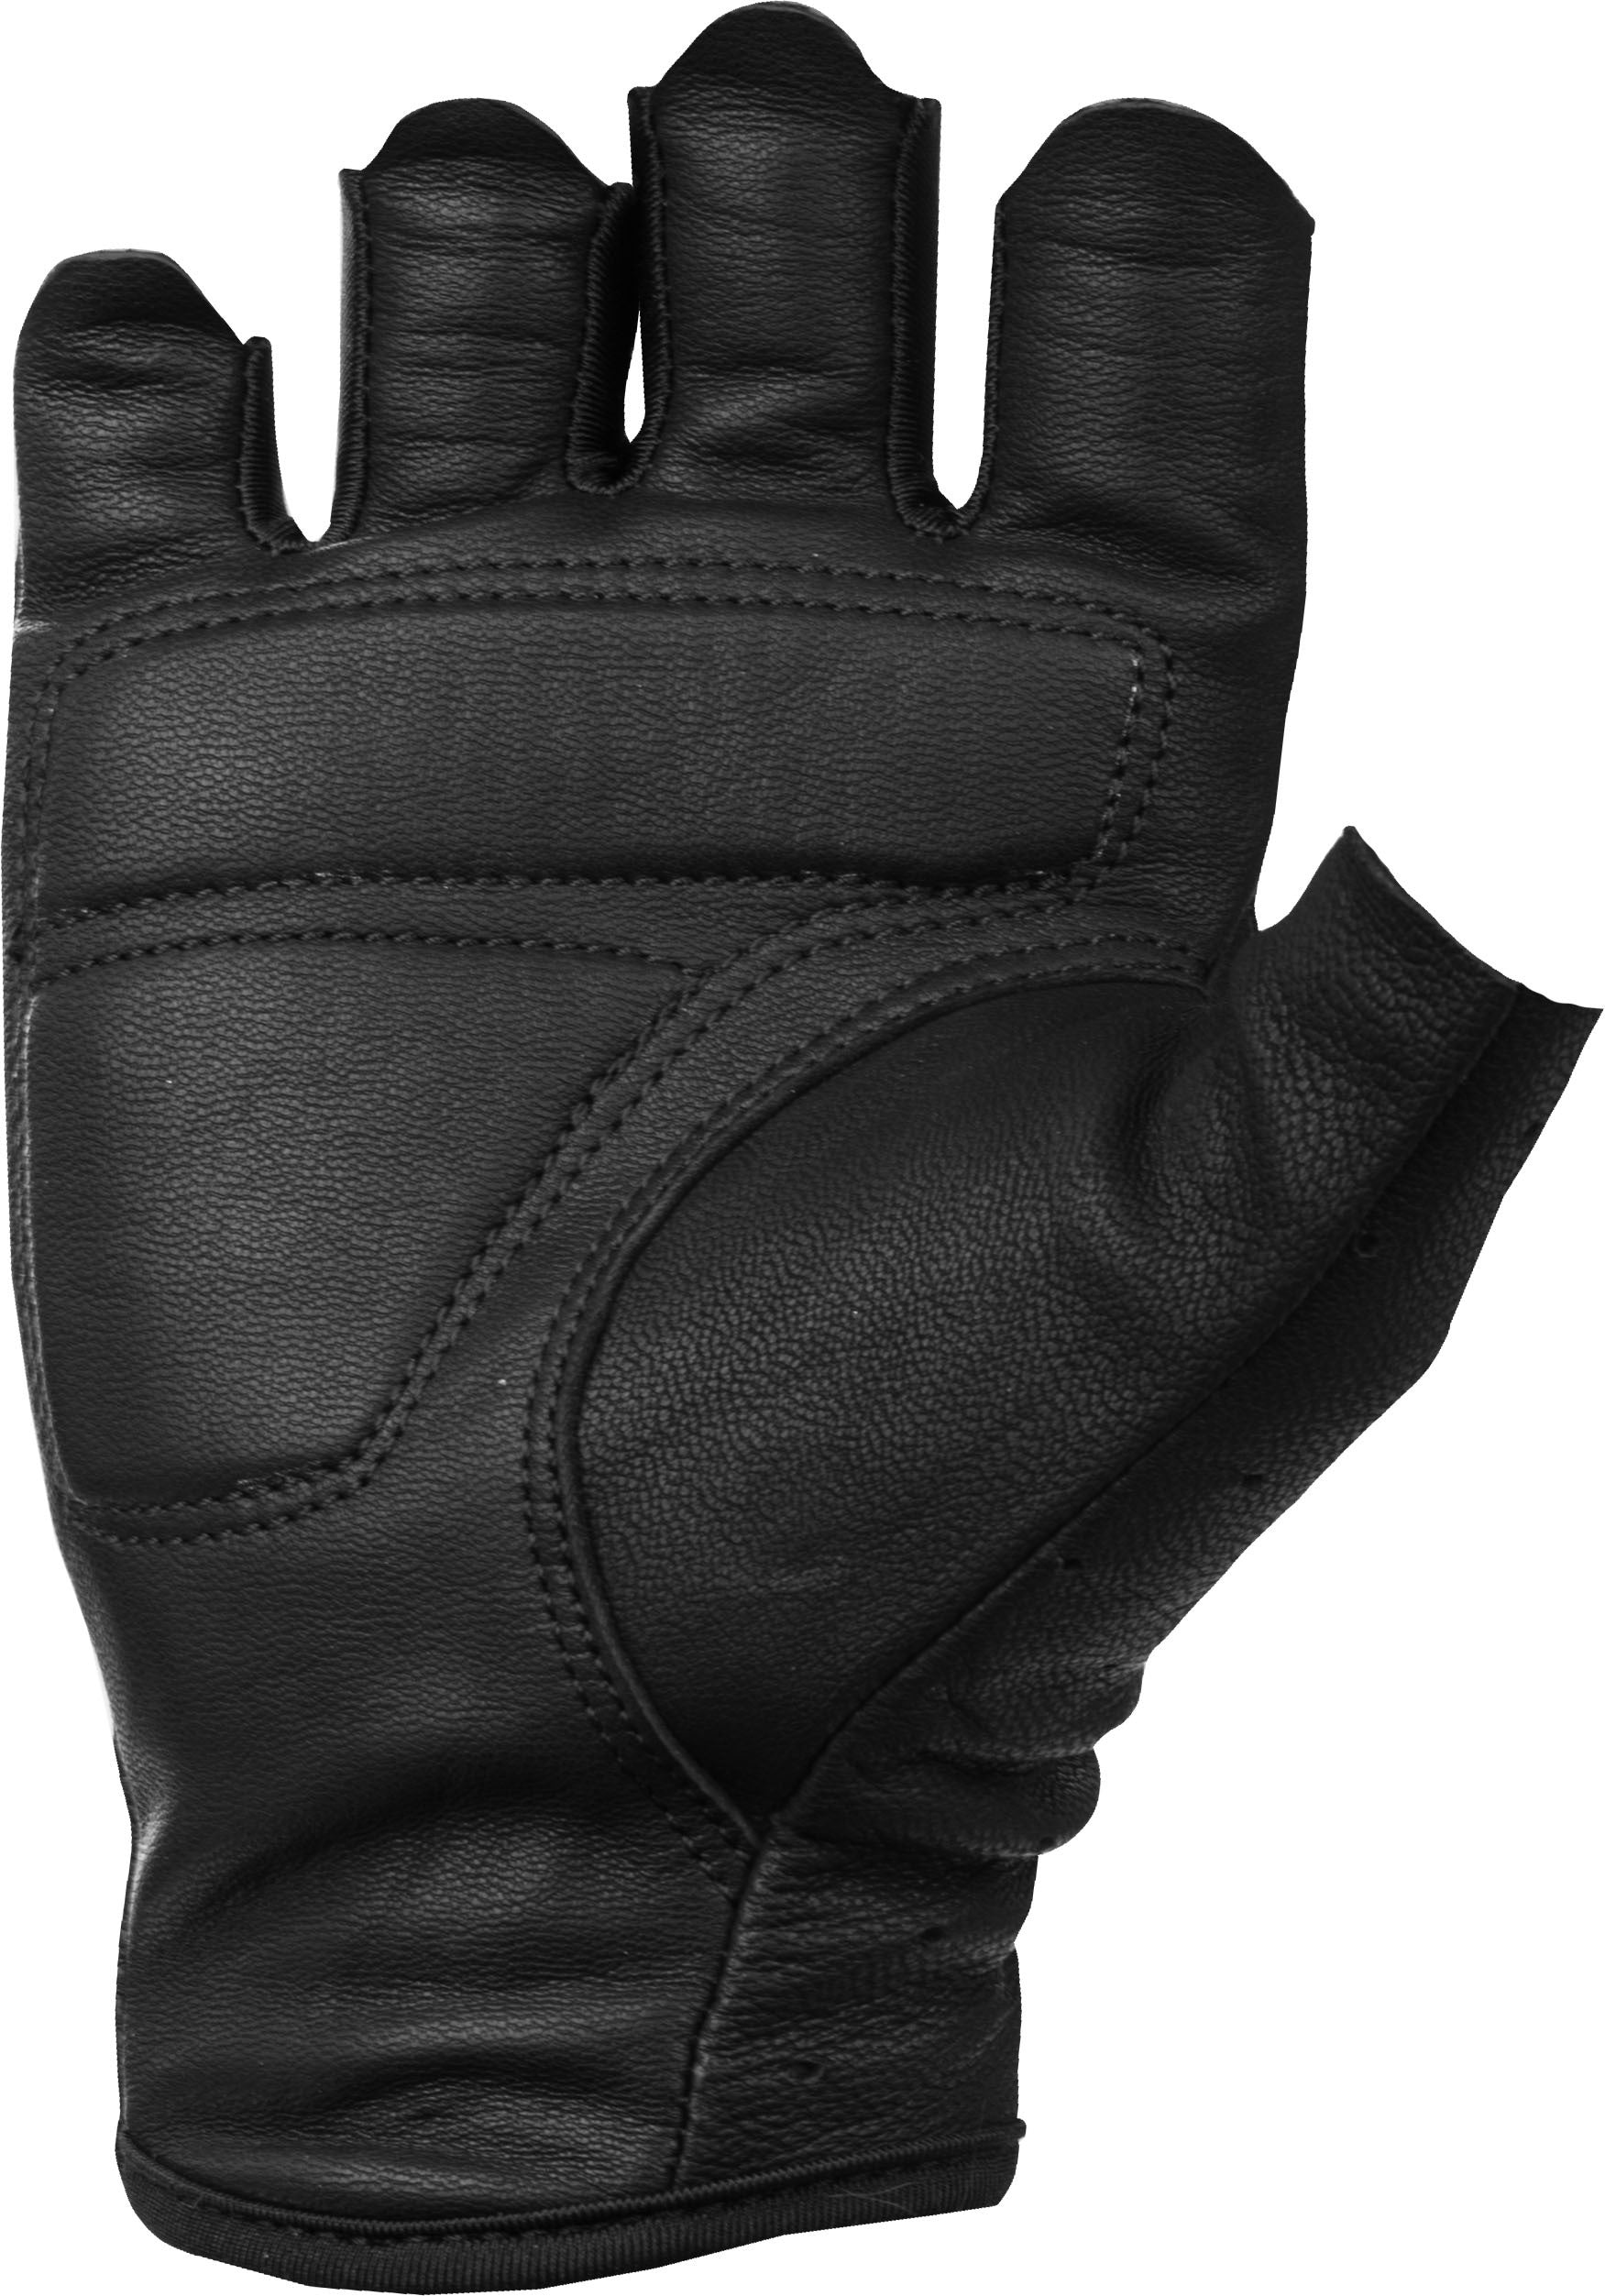 Women's Ranger Gloves Black Lg